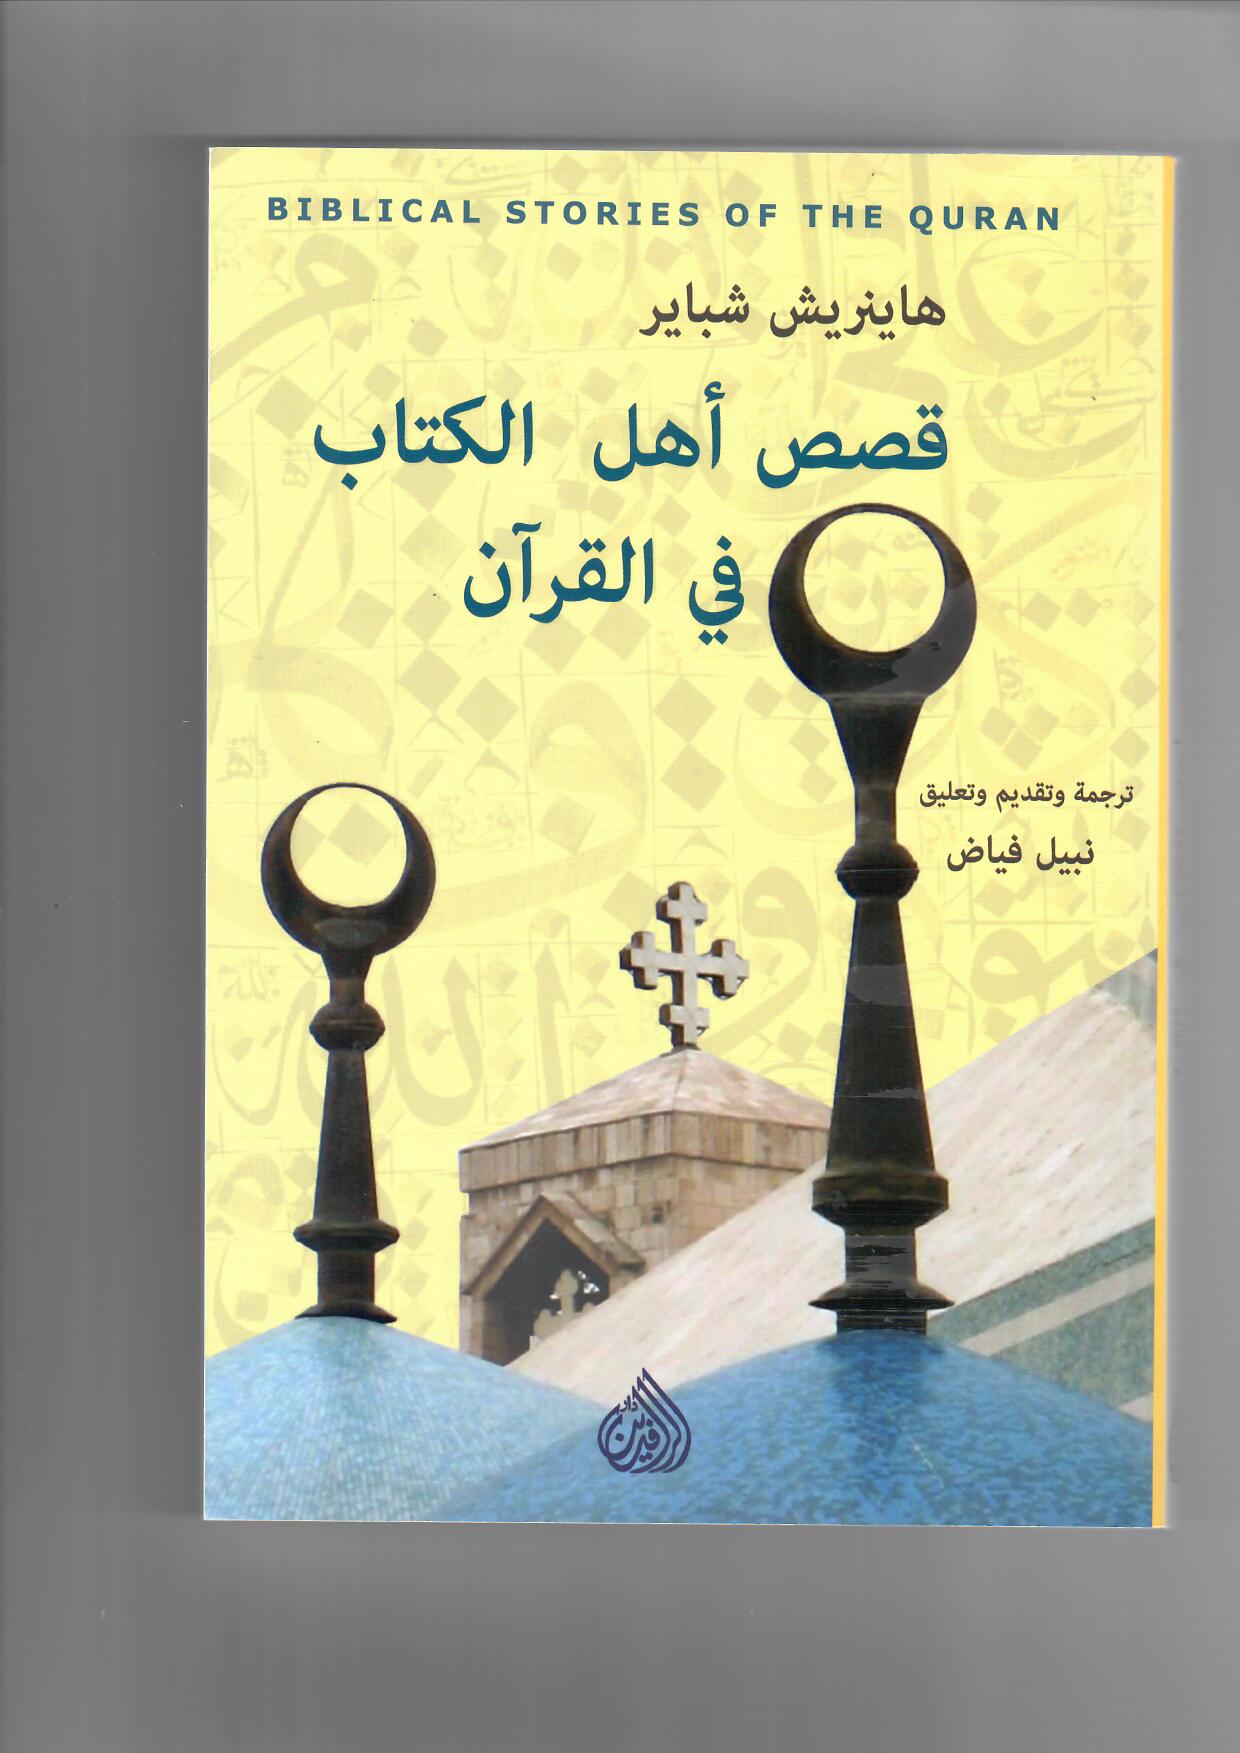 “قصص أهل الكتاب في القرآن” لهاينرش شباير